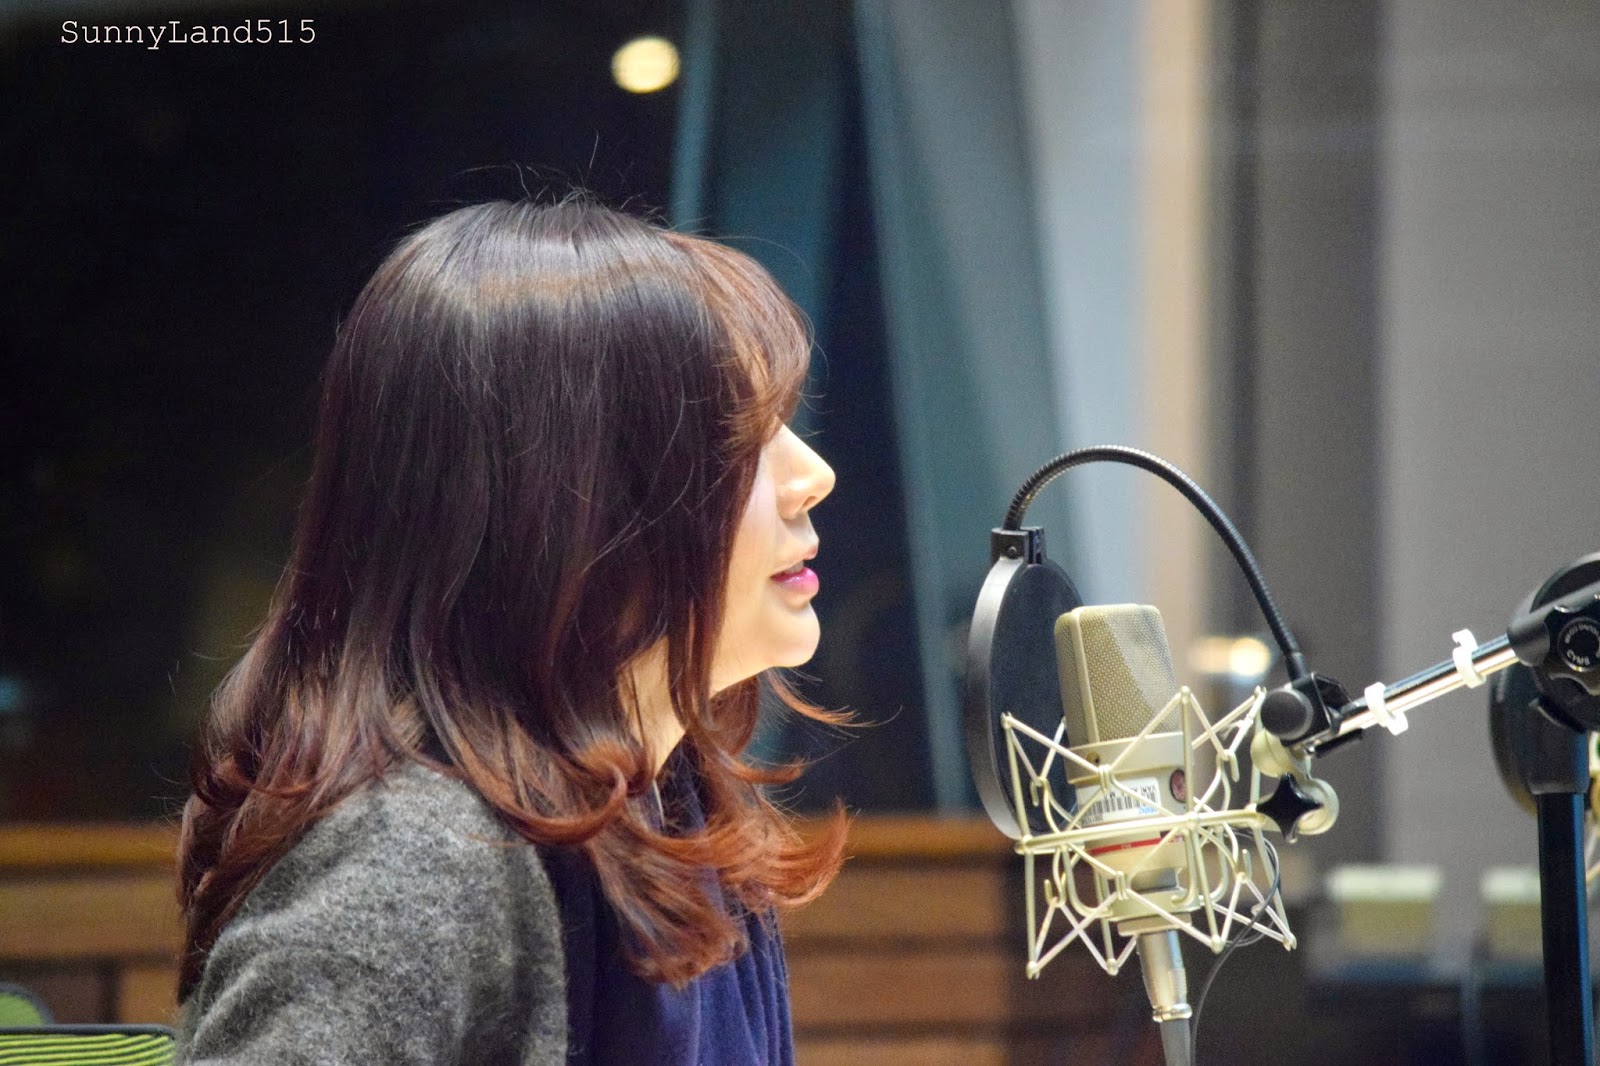 [OTHER][06-02-2015]Hình ảnh mới nhất từ DJ Sunny tại Radio MBC FM4U - "FM Date" - Page 10 DSC_0128_Fotor